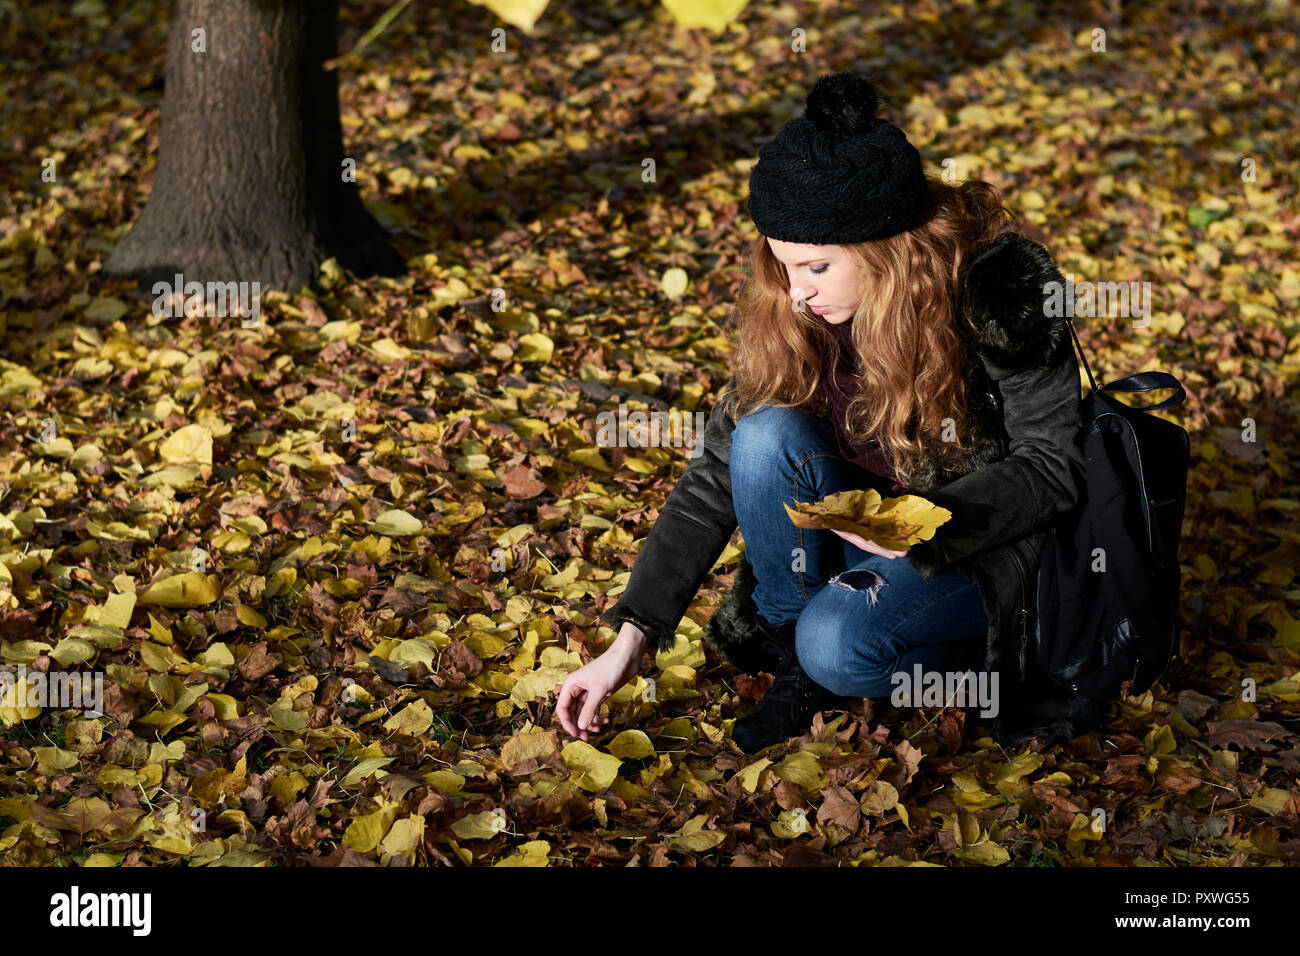 Femme la collecte les feuilles d'automne dans un parc Banque D'Images